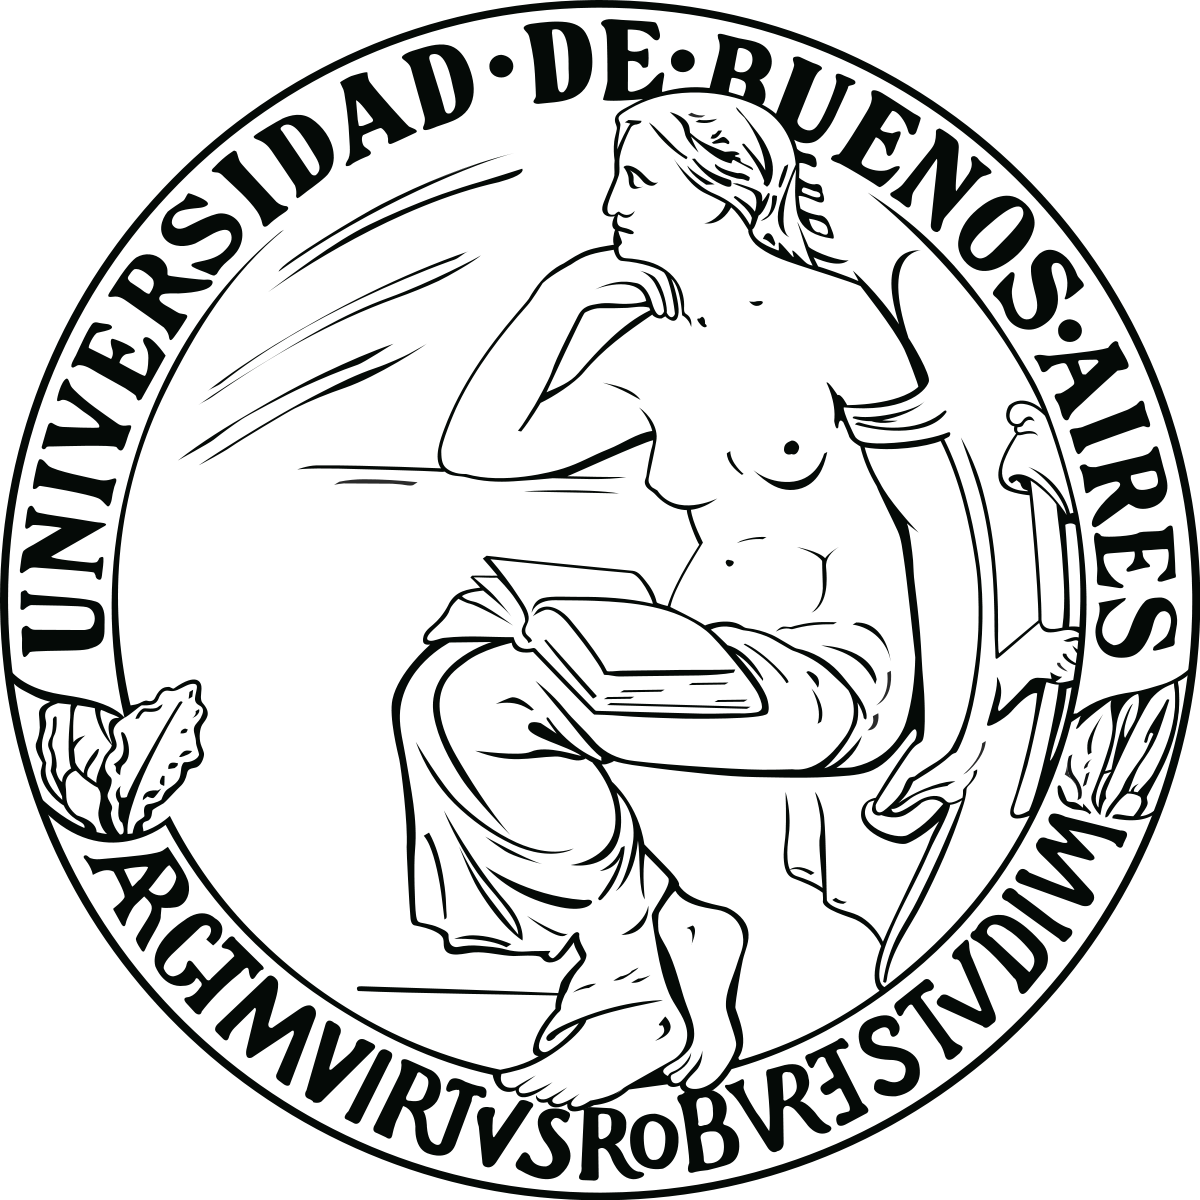 logotipo de la universidad de buenos aires